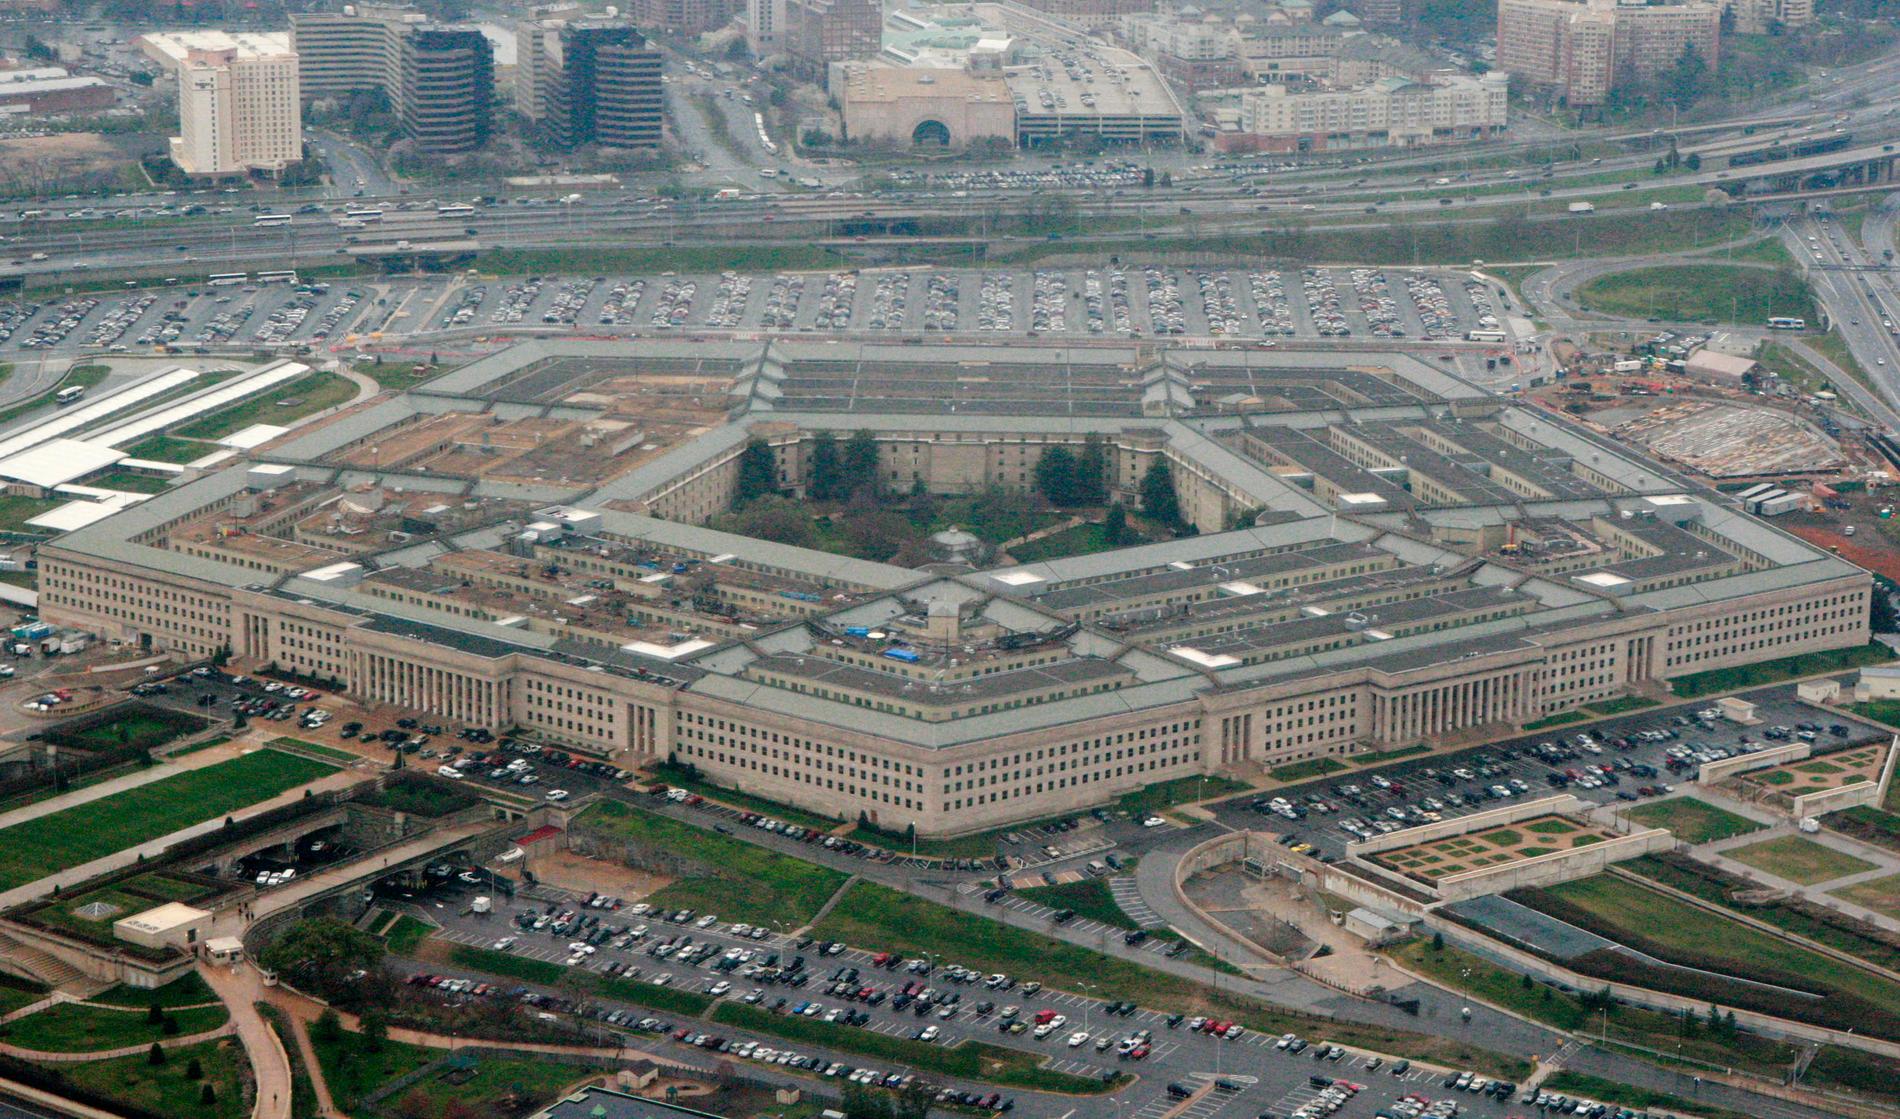 En amerikansk underrättelseagent ställs inför rätta för att ha bytt sida och hjälpt Iran. Arkivbild på USA:s försvarshögkvarter Pentagon.